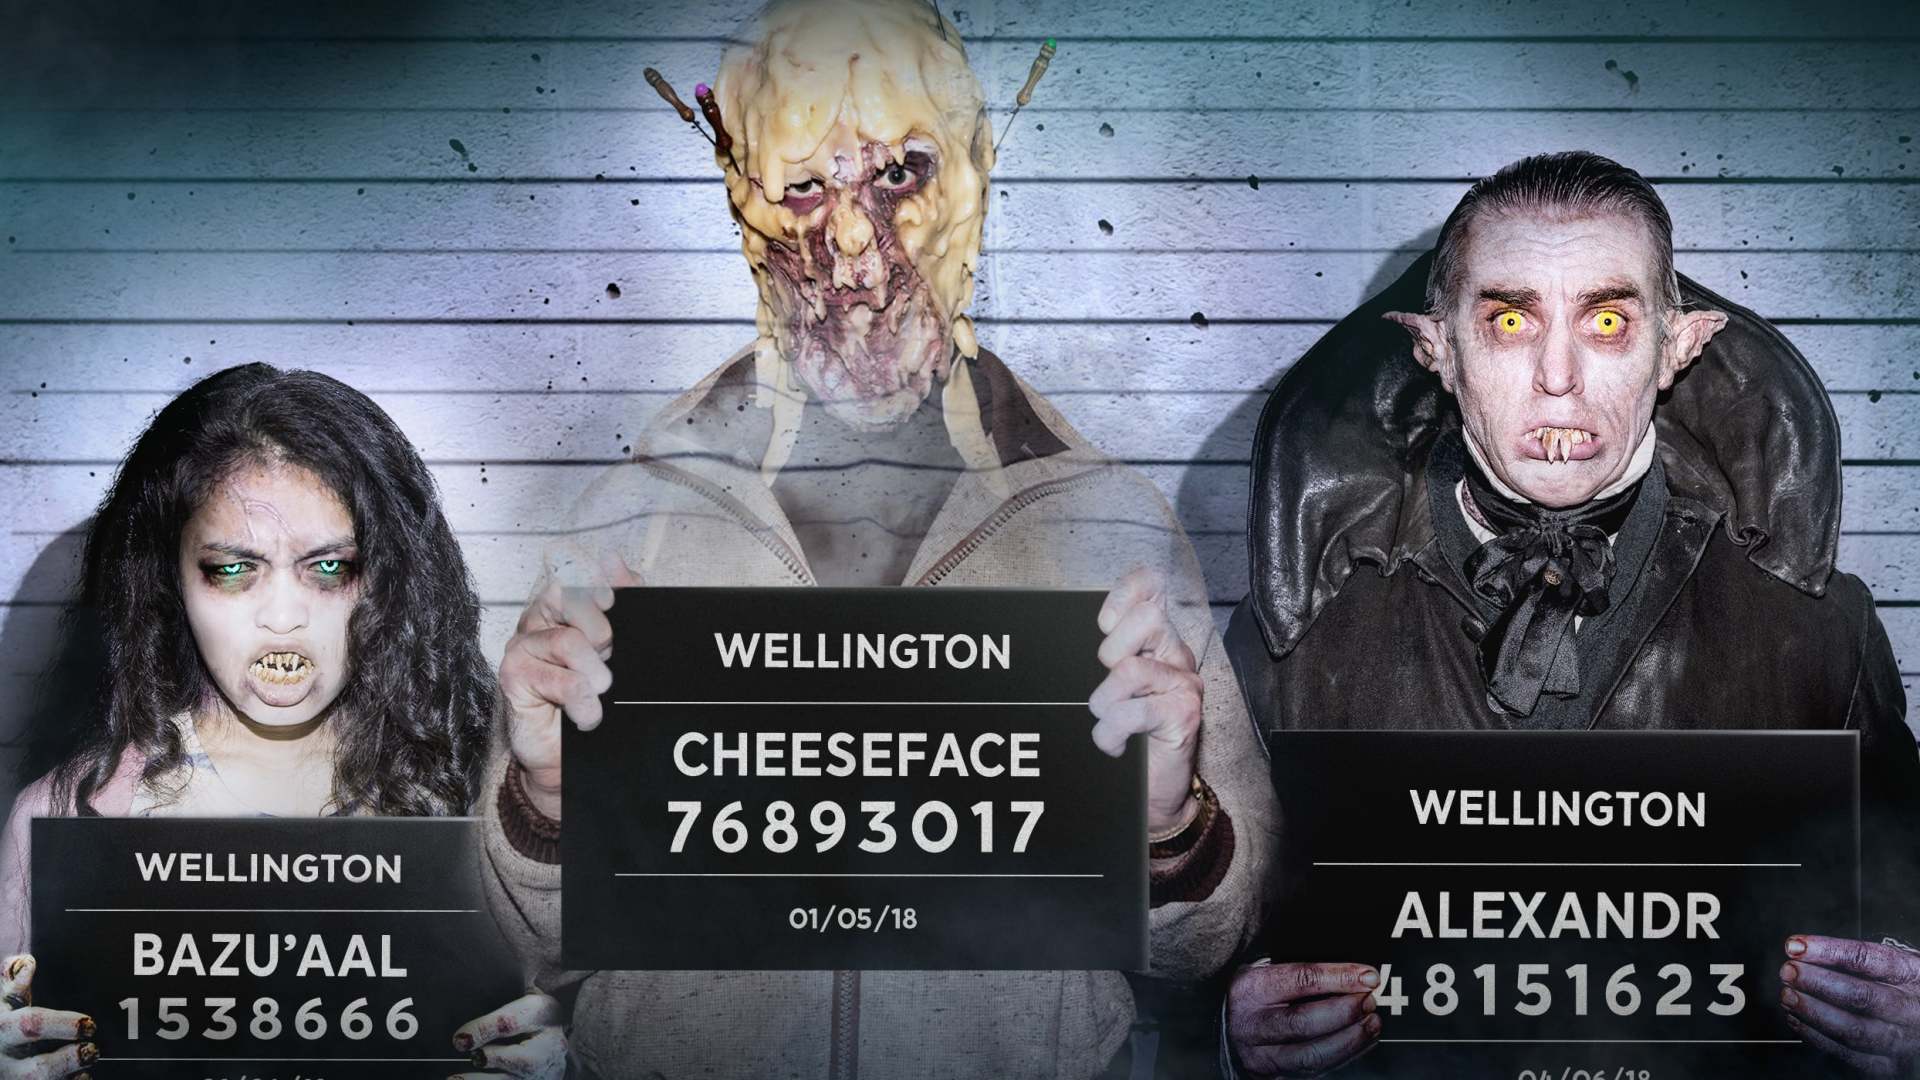 ველინგტონური პარანორმალური ამბები / Wellington Paranormal